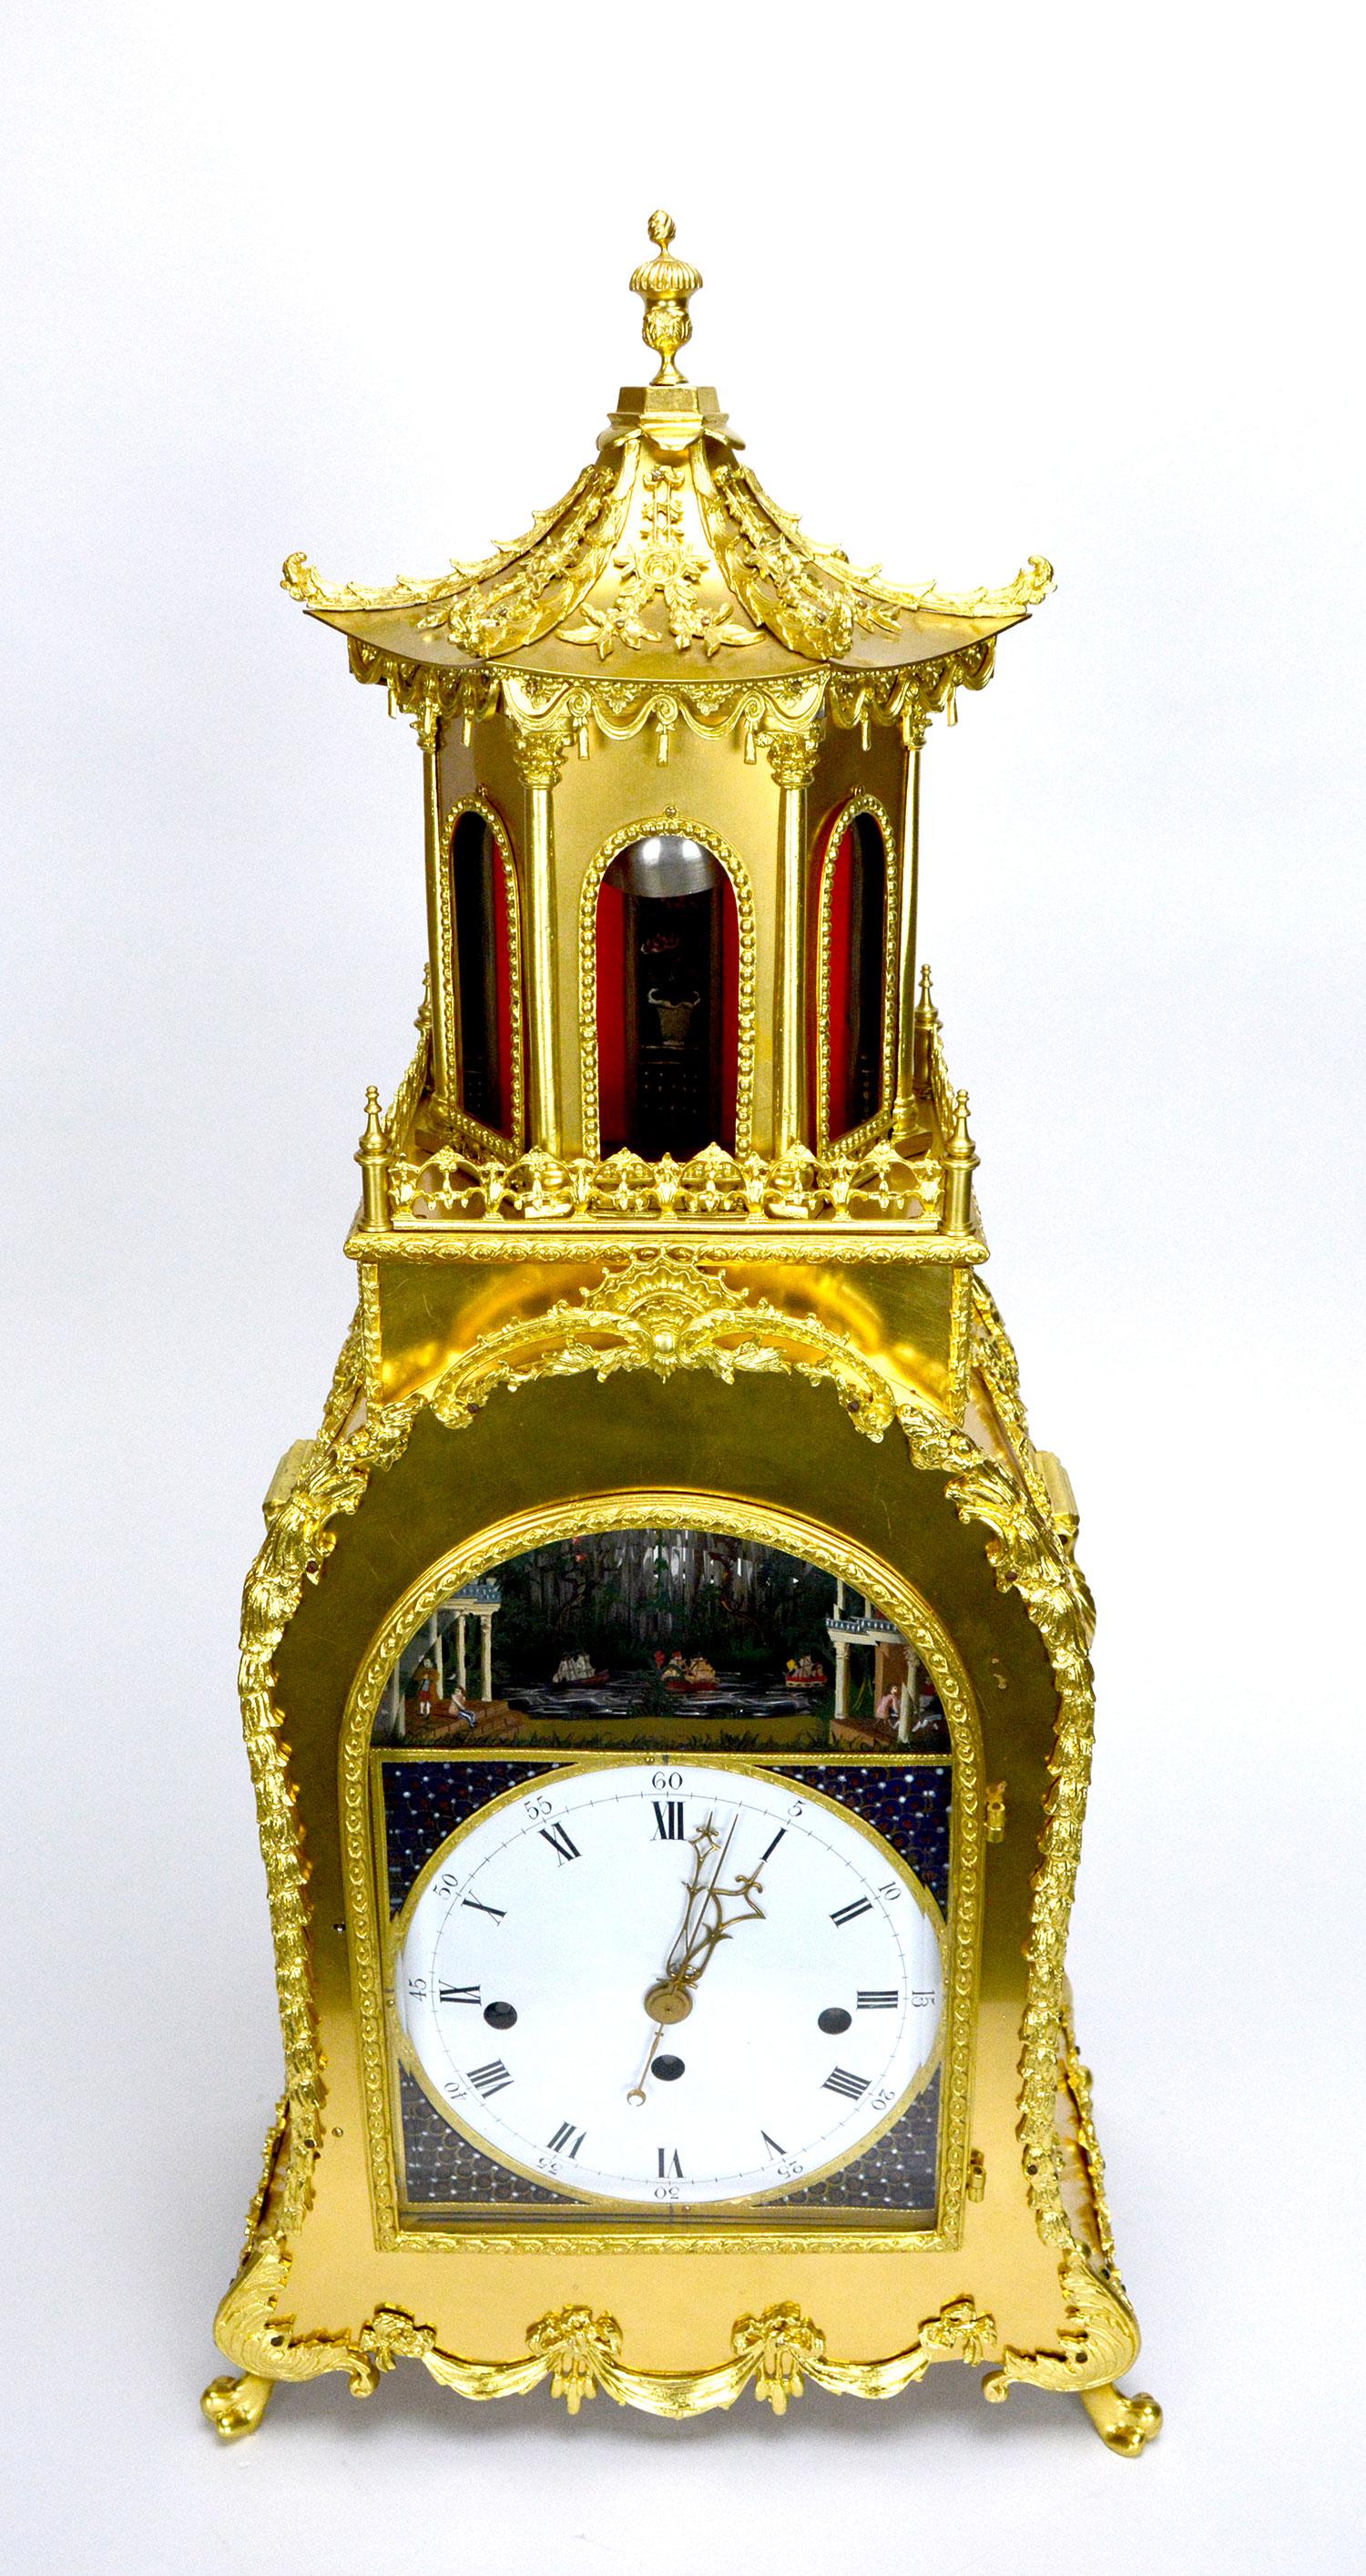 Une grande horloge à support d'automate musical de style George III. Le magnifique boîtier en bronze doré est décoré de magnifiques applications en laiton. Une grande pagode au sommet rend l'apparence de cette horloge encore plus impressionnante. Le